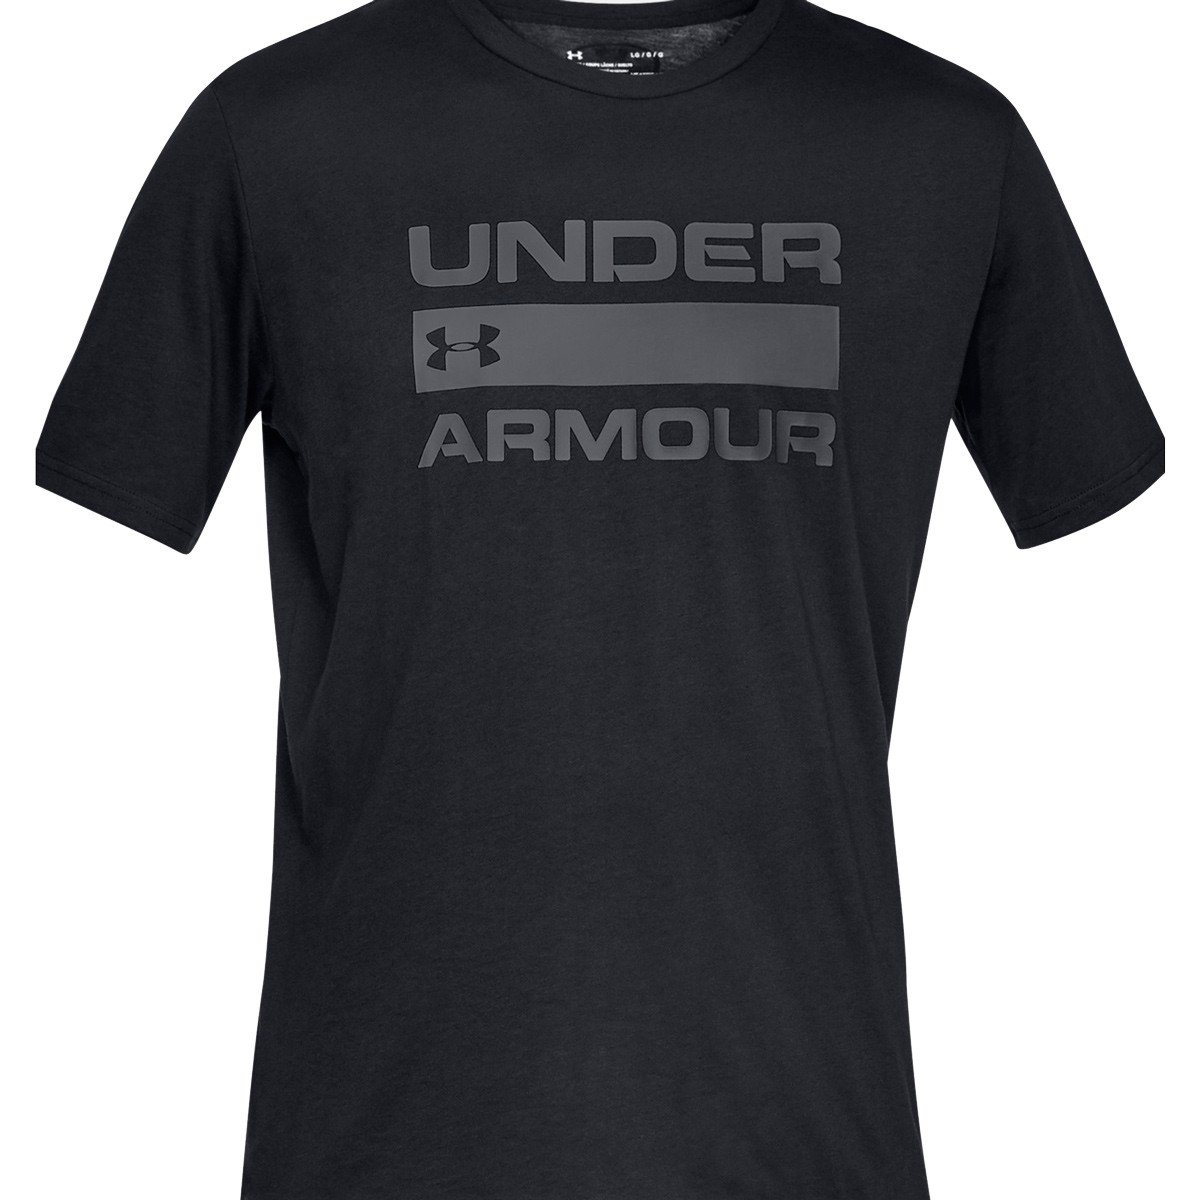 Under Armour Team Issue Wordmark T-shirt Herre